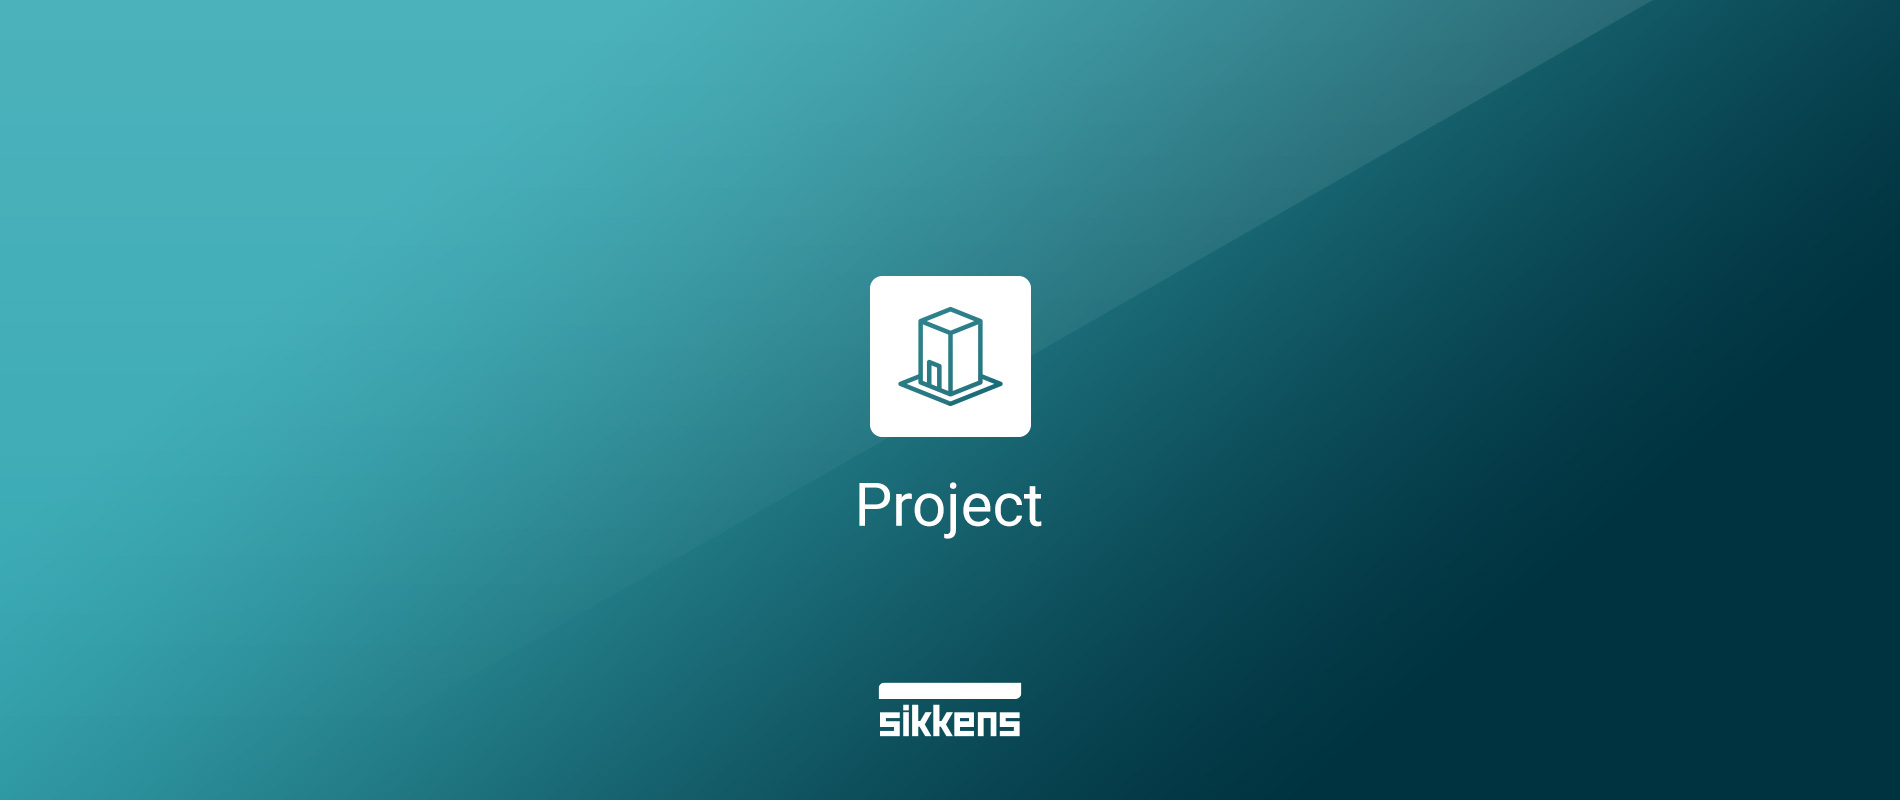 Sikkens Project, l'app per i progettisti